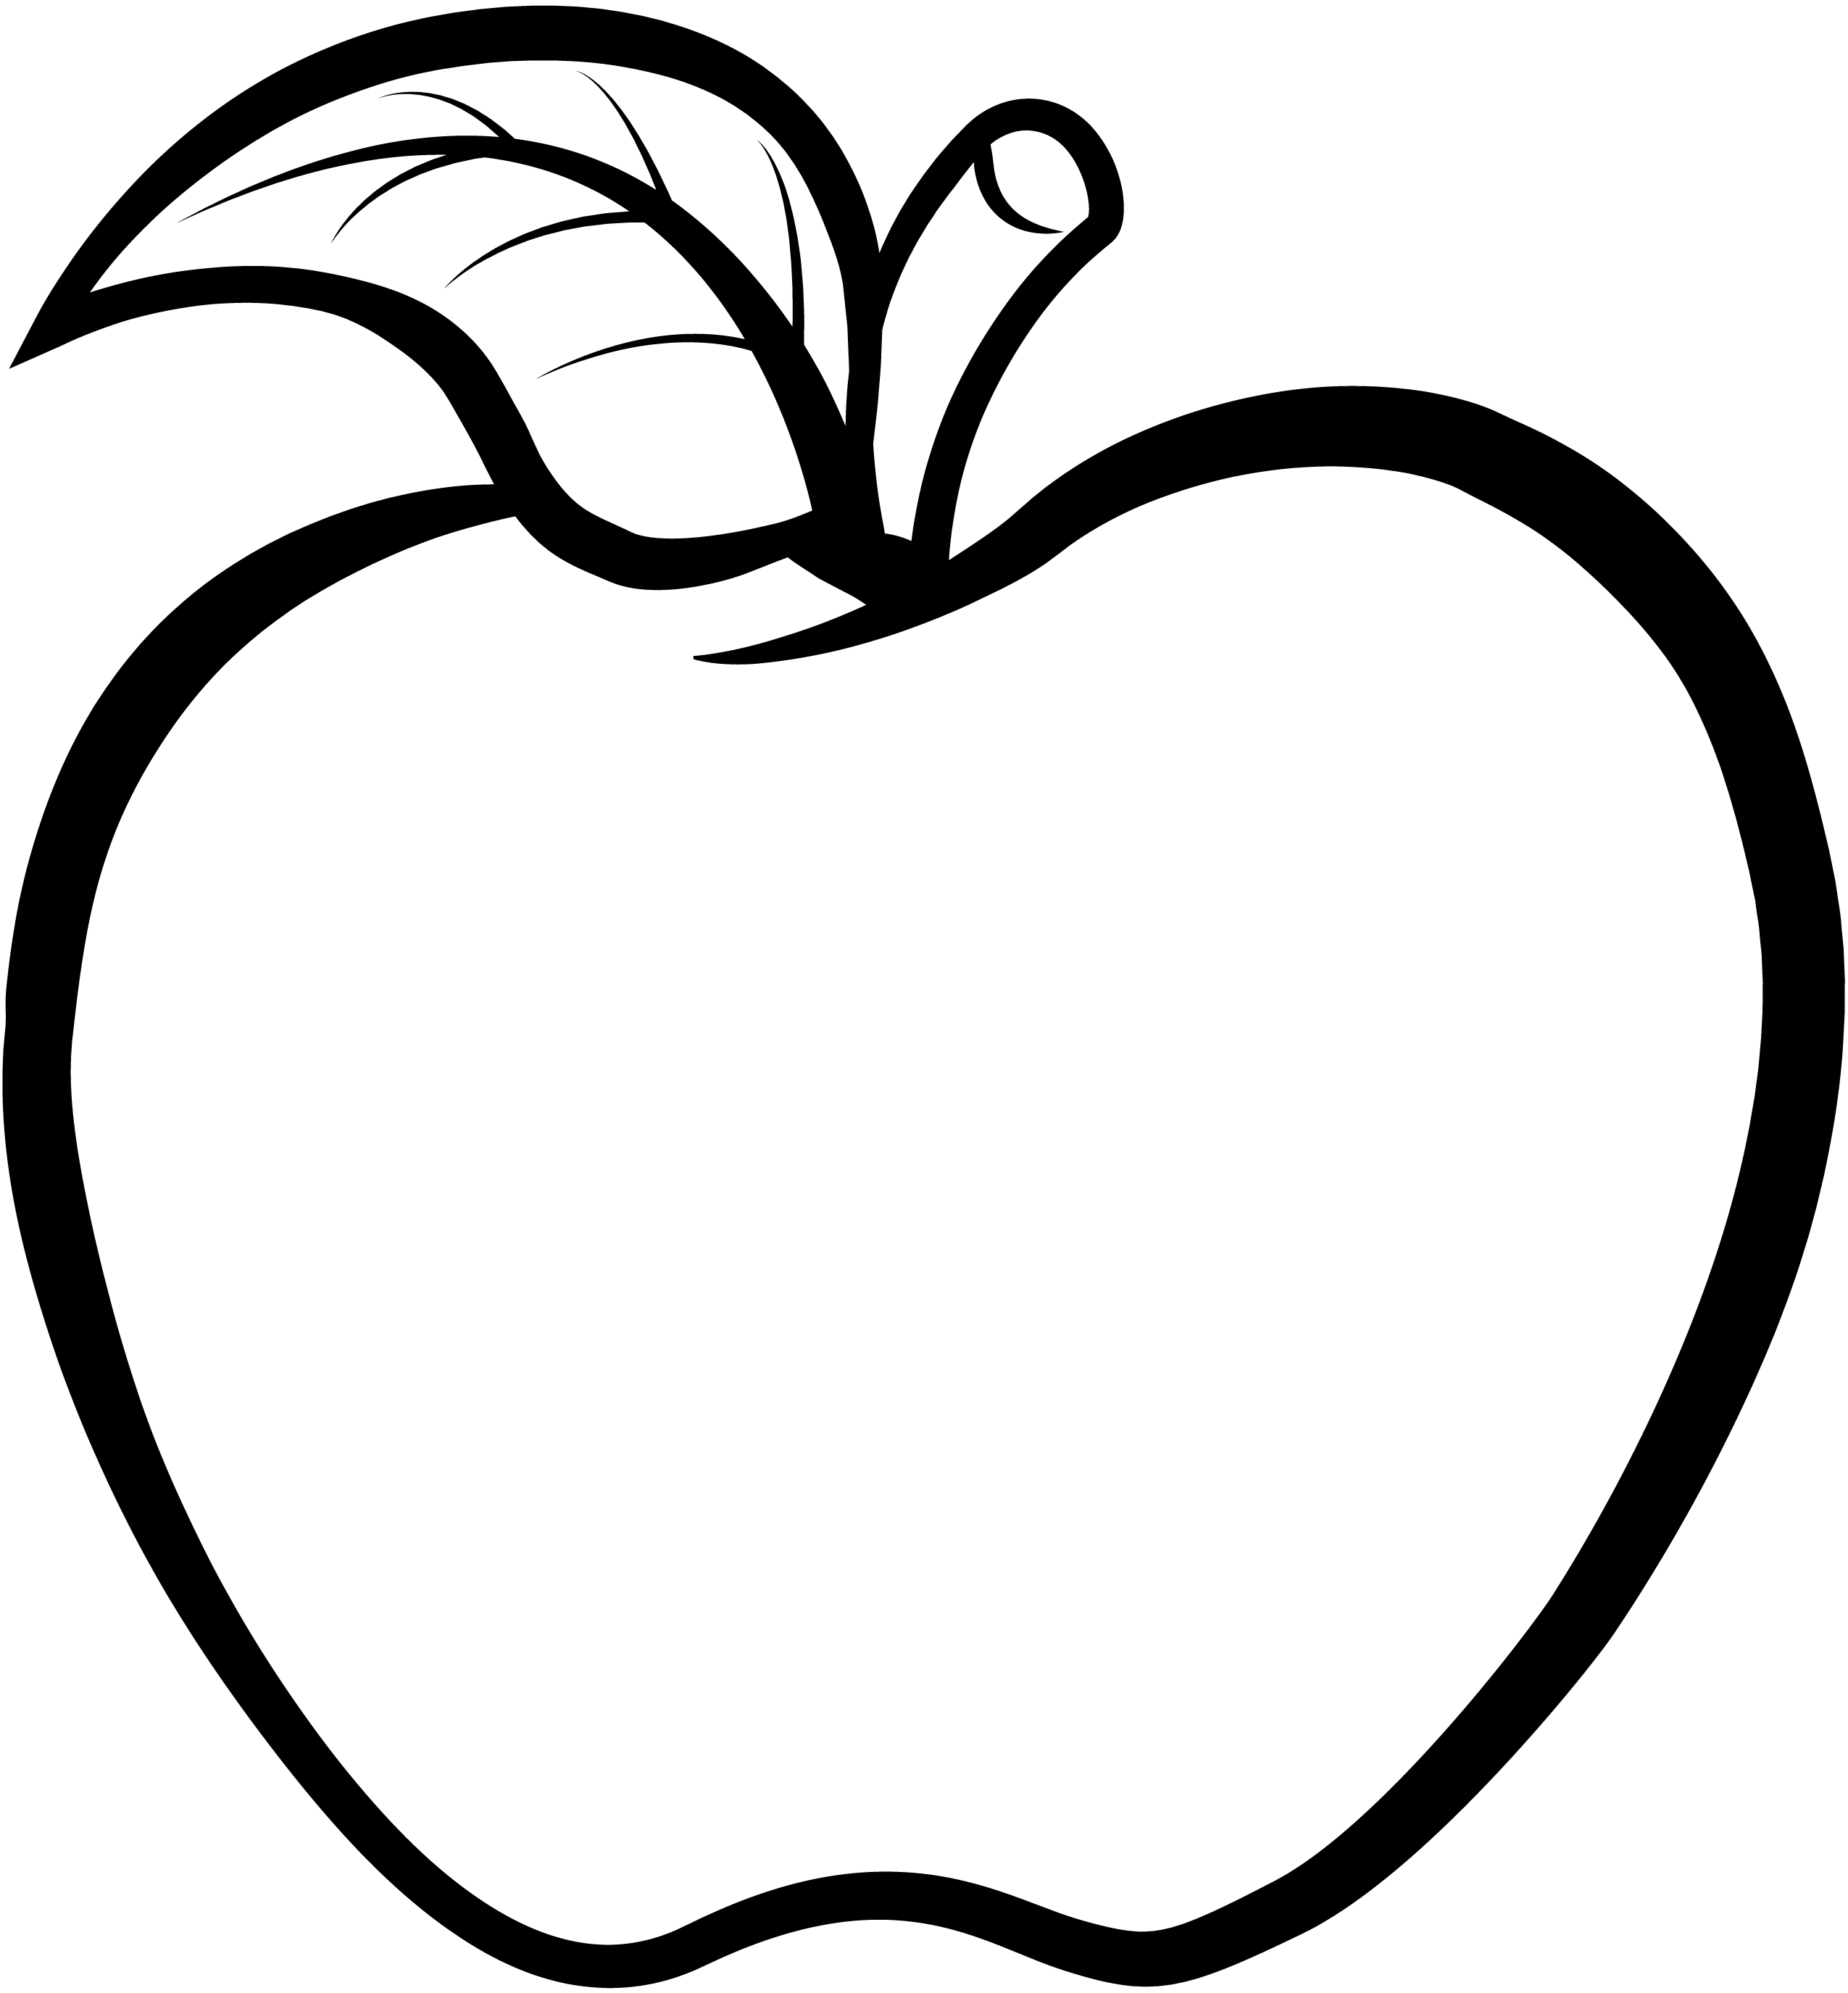 عکس سیب با صفحه داخلی سفید برای چاپ تابلو اعلانات